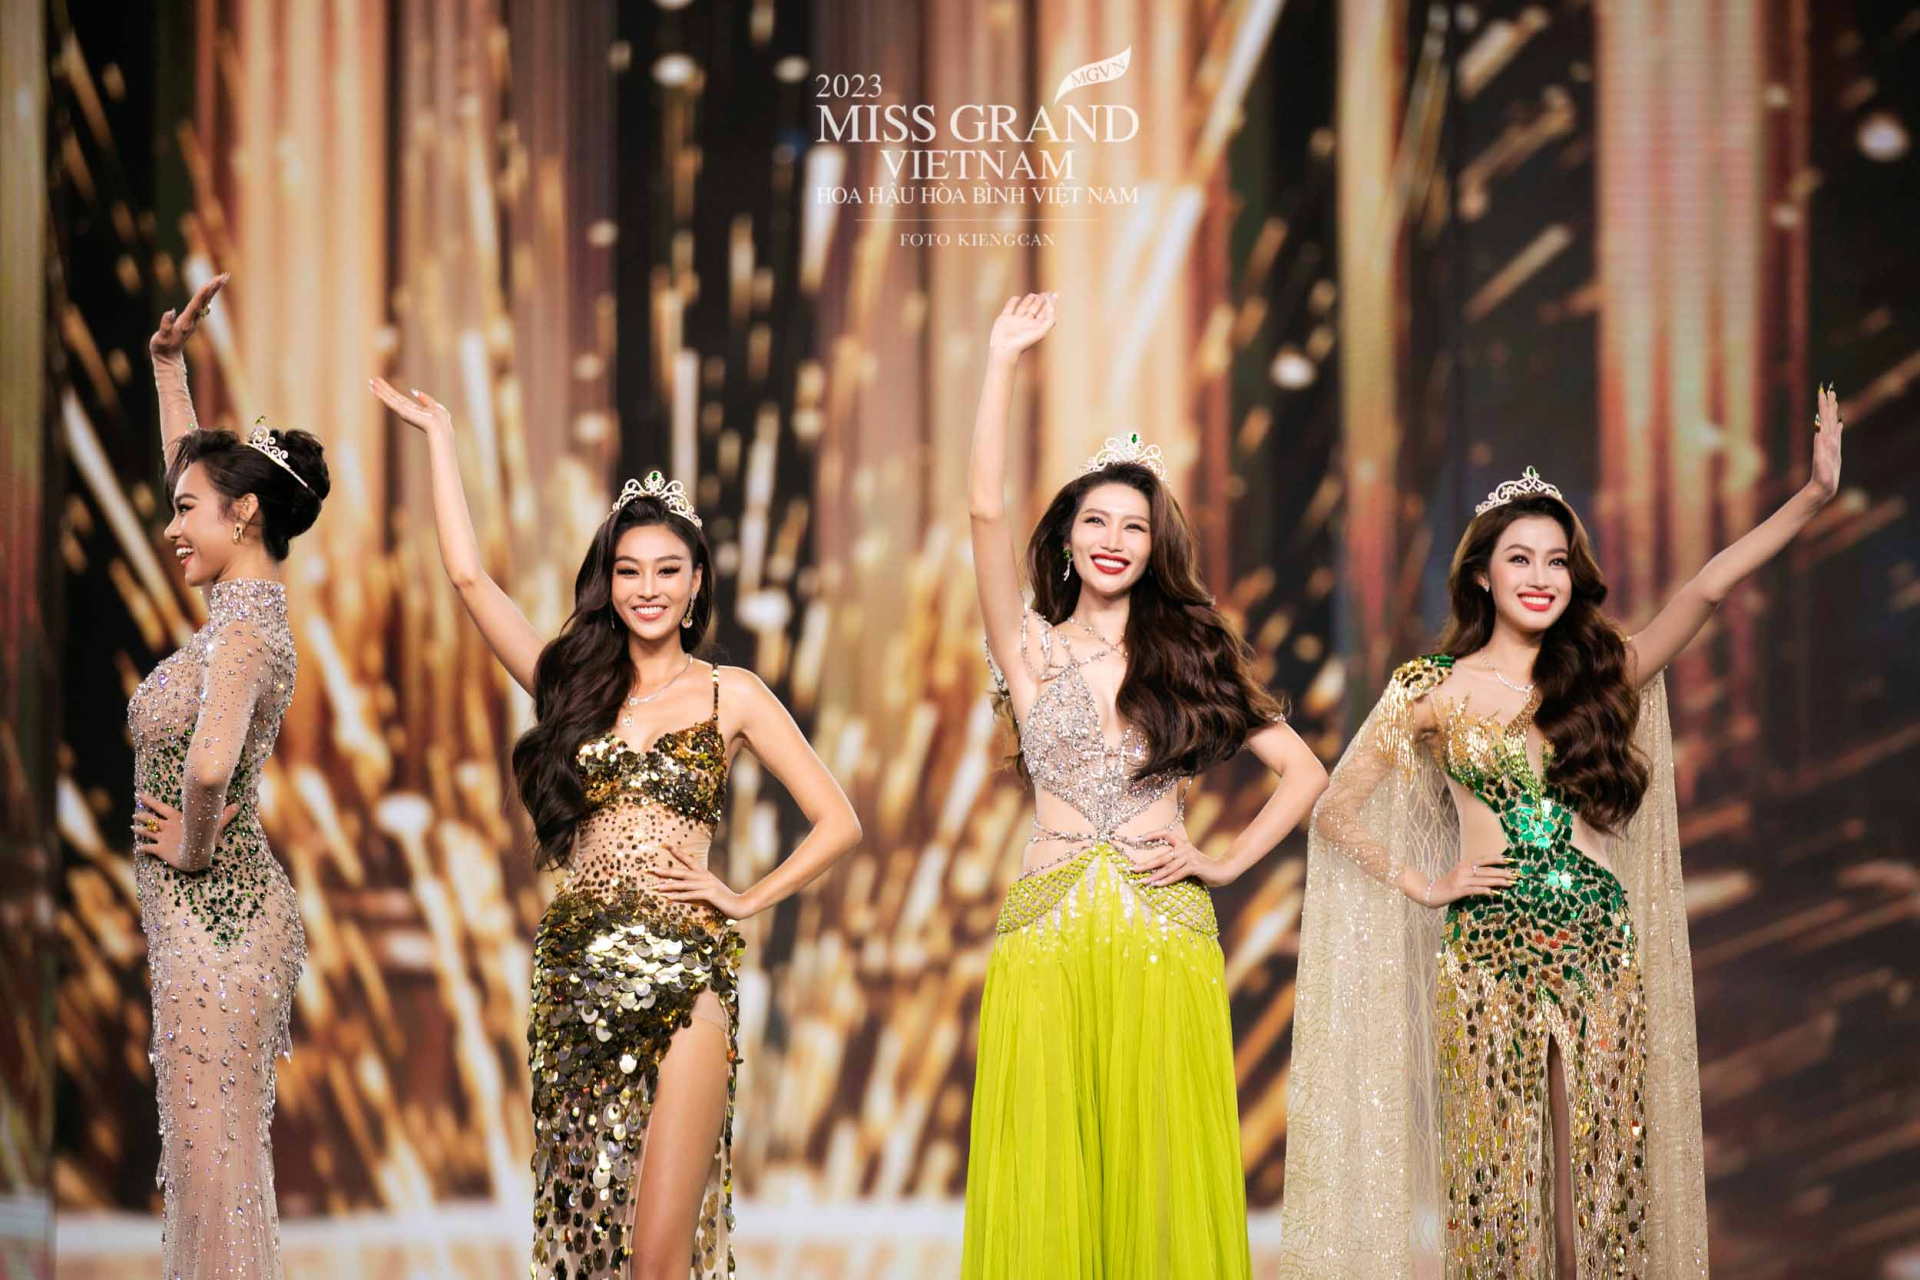 Tại đây, Top 5 Miss Grand Vietnam 2022 đã có những khoảnh khắc đáng nhớ và xúc động với màn final walk trên sân khấu trong sự hò reo, cổ vũ của đông đảo người hâm mộ.